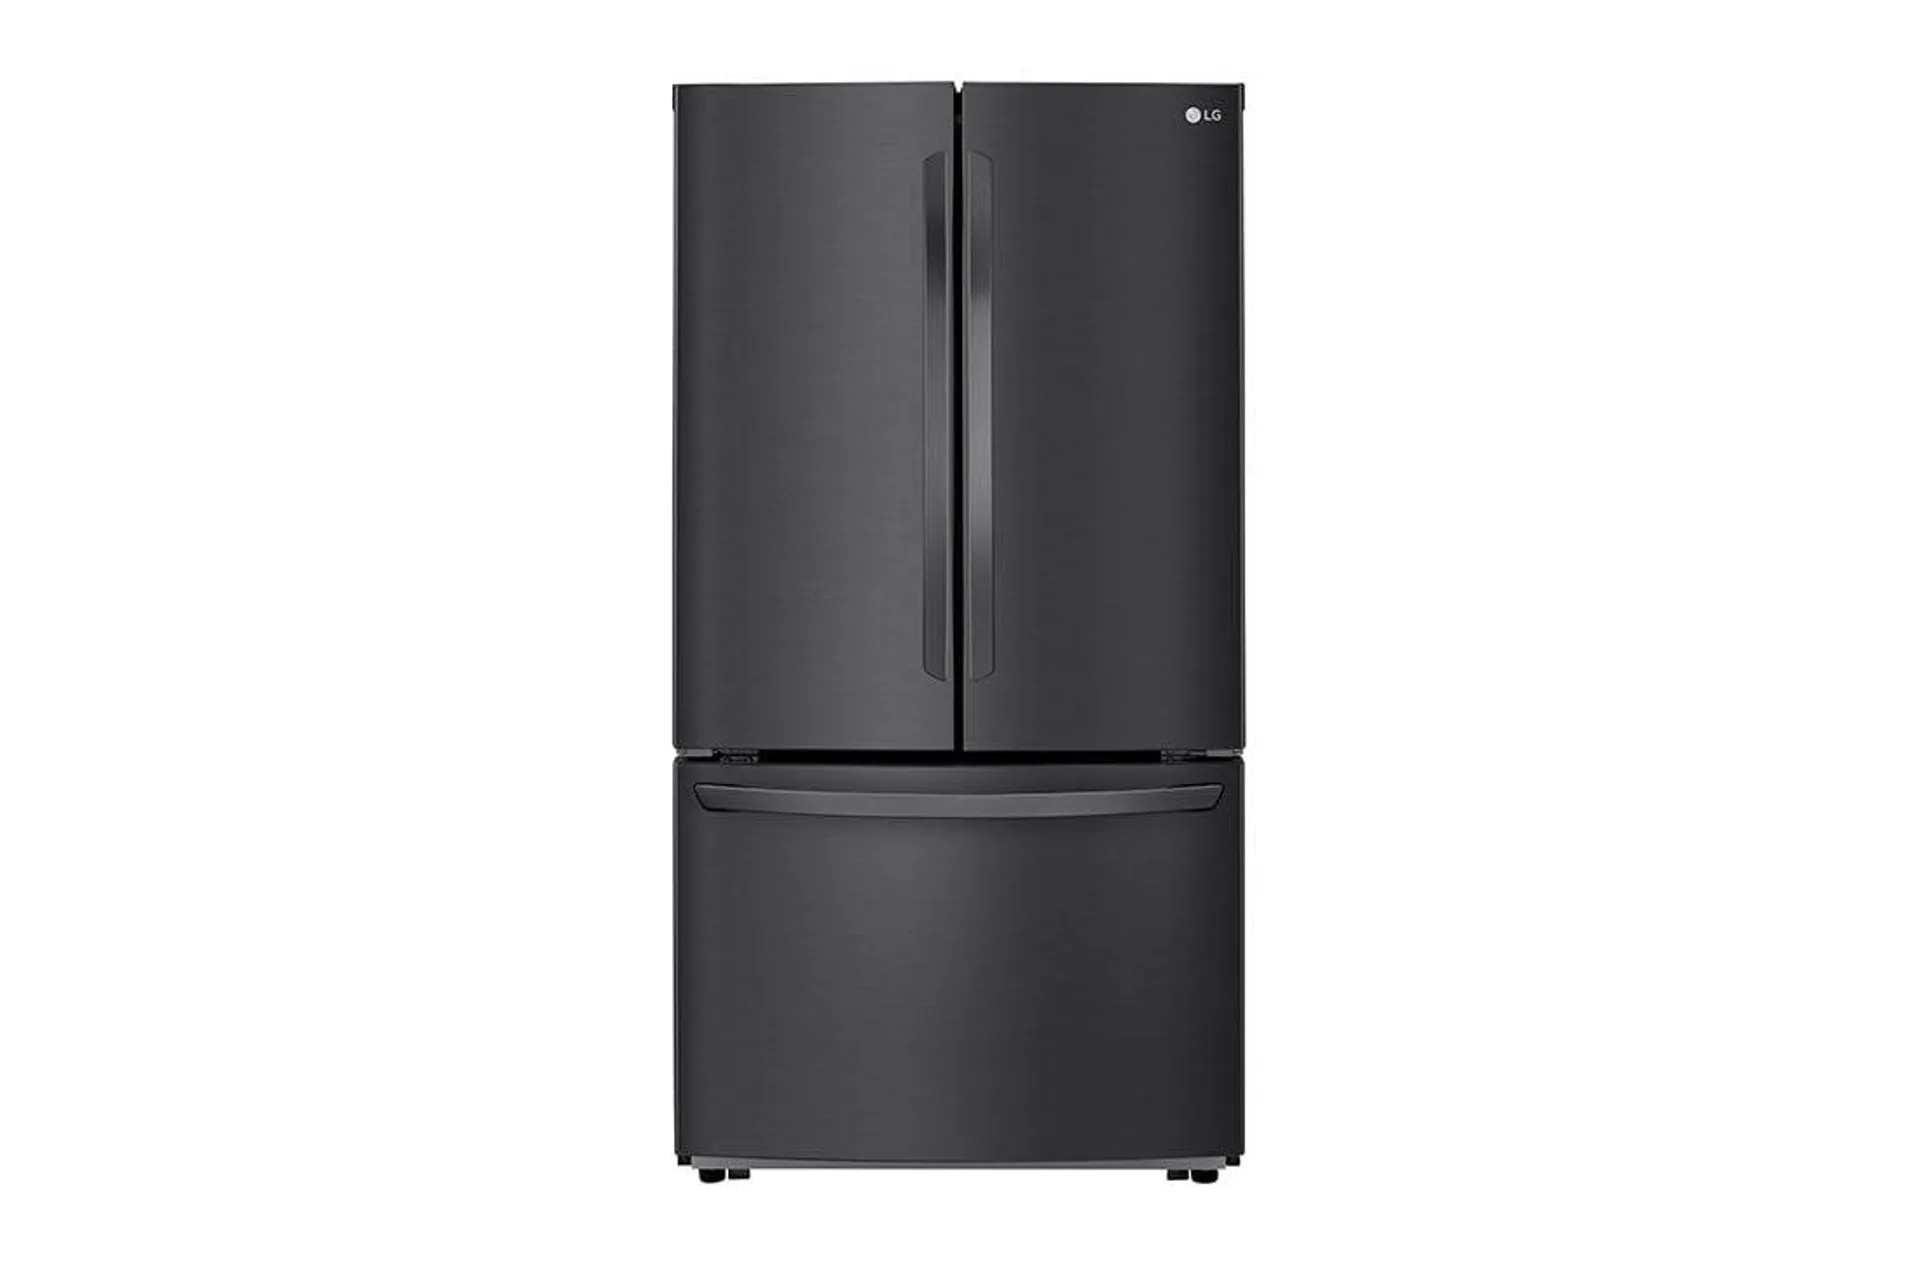 Refrigerador French Door 29 pies cúbicos- Color Negro Mate con Fábrica de Hielo en congelador| SMART INVERTER